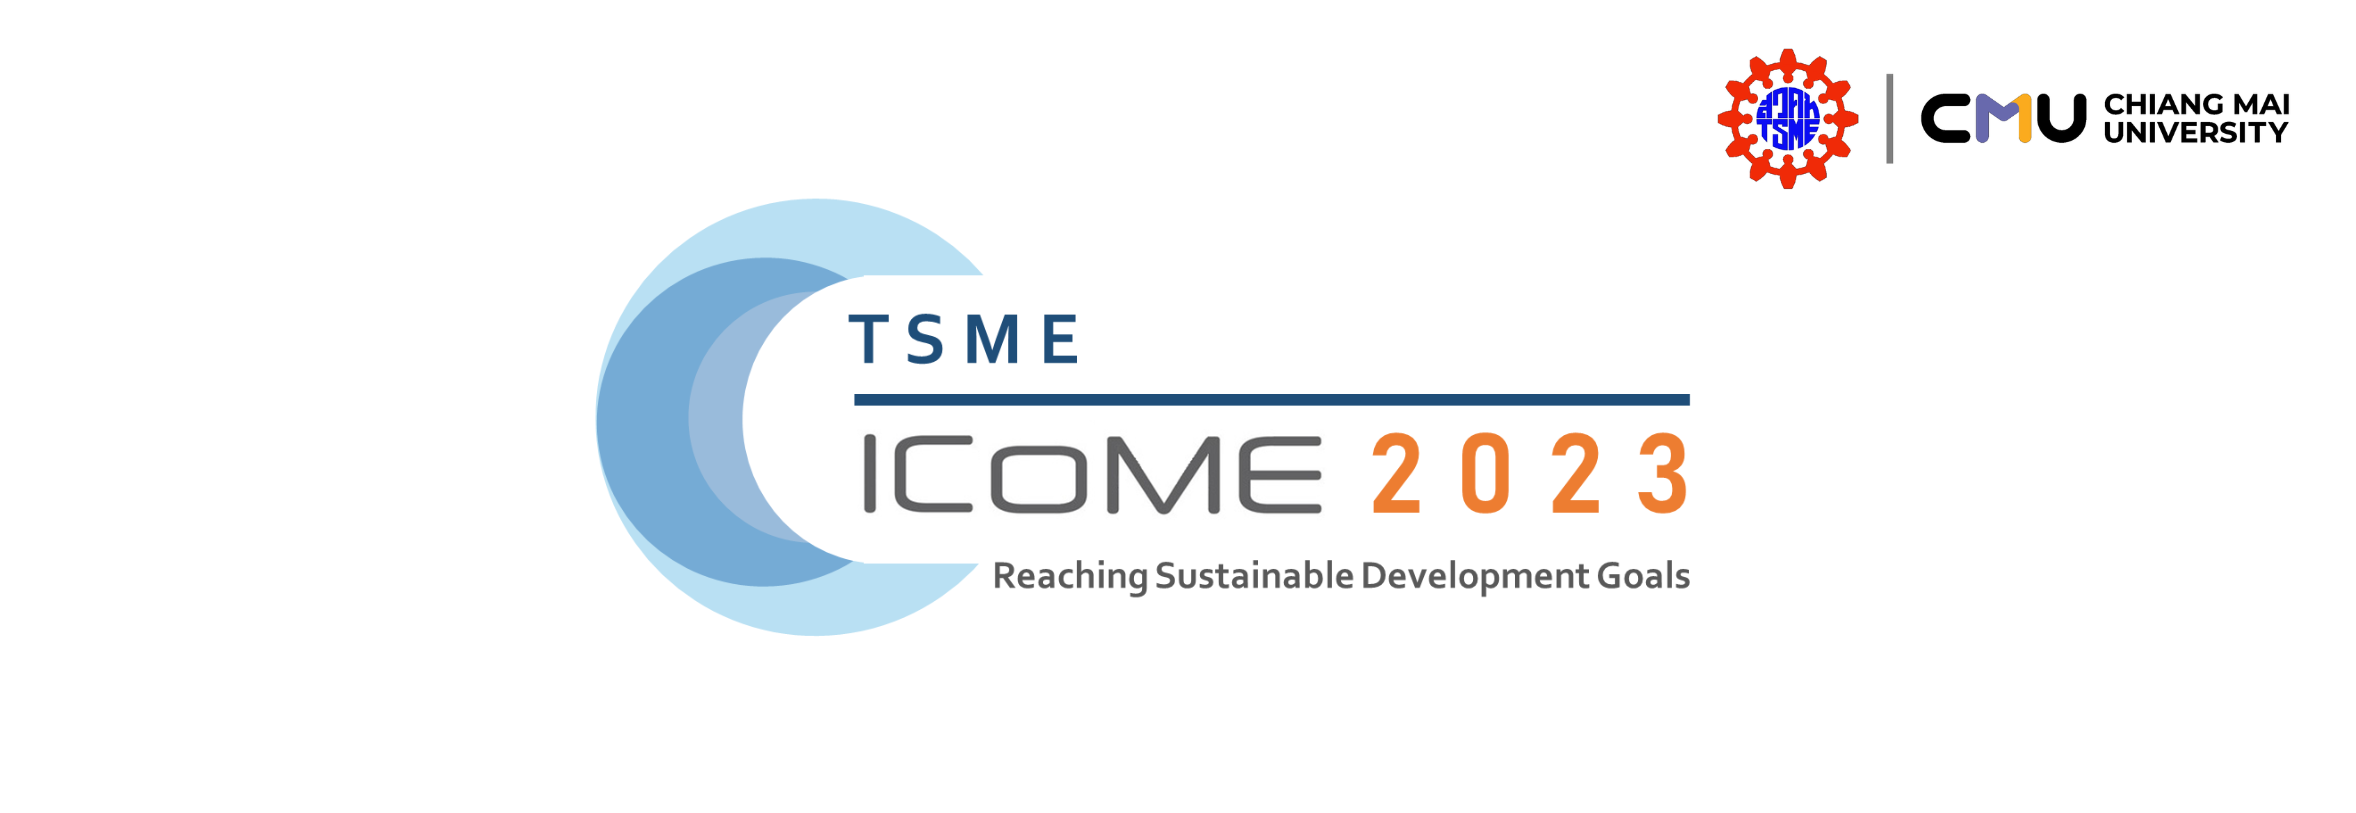 TSME-ICoME 2023